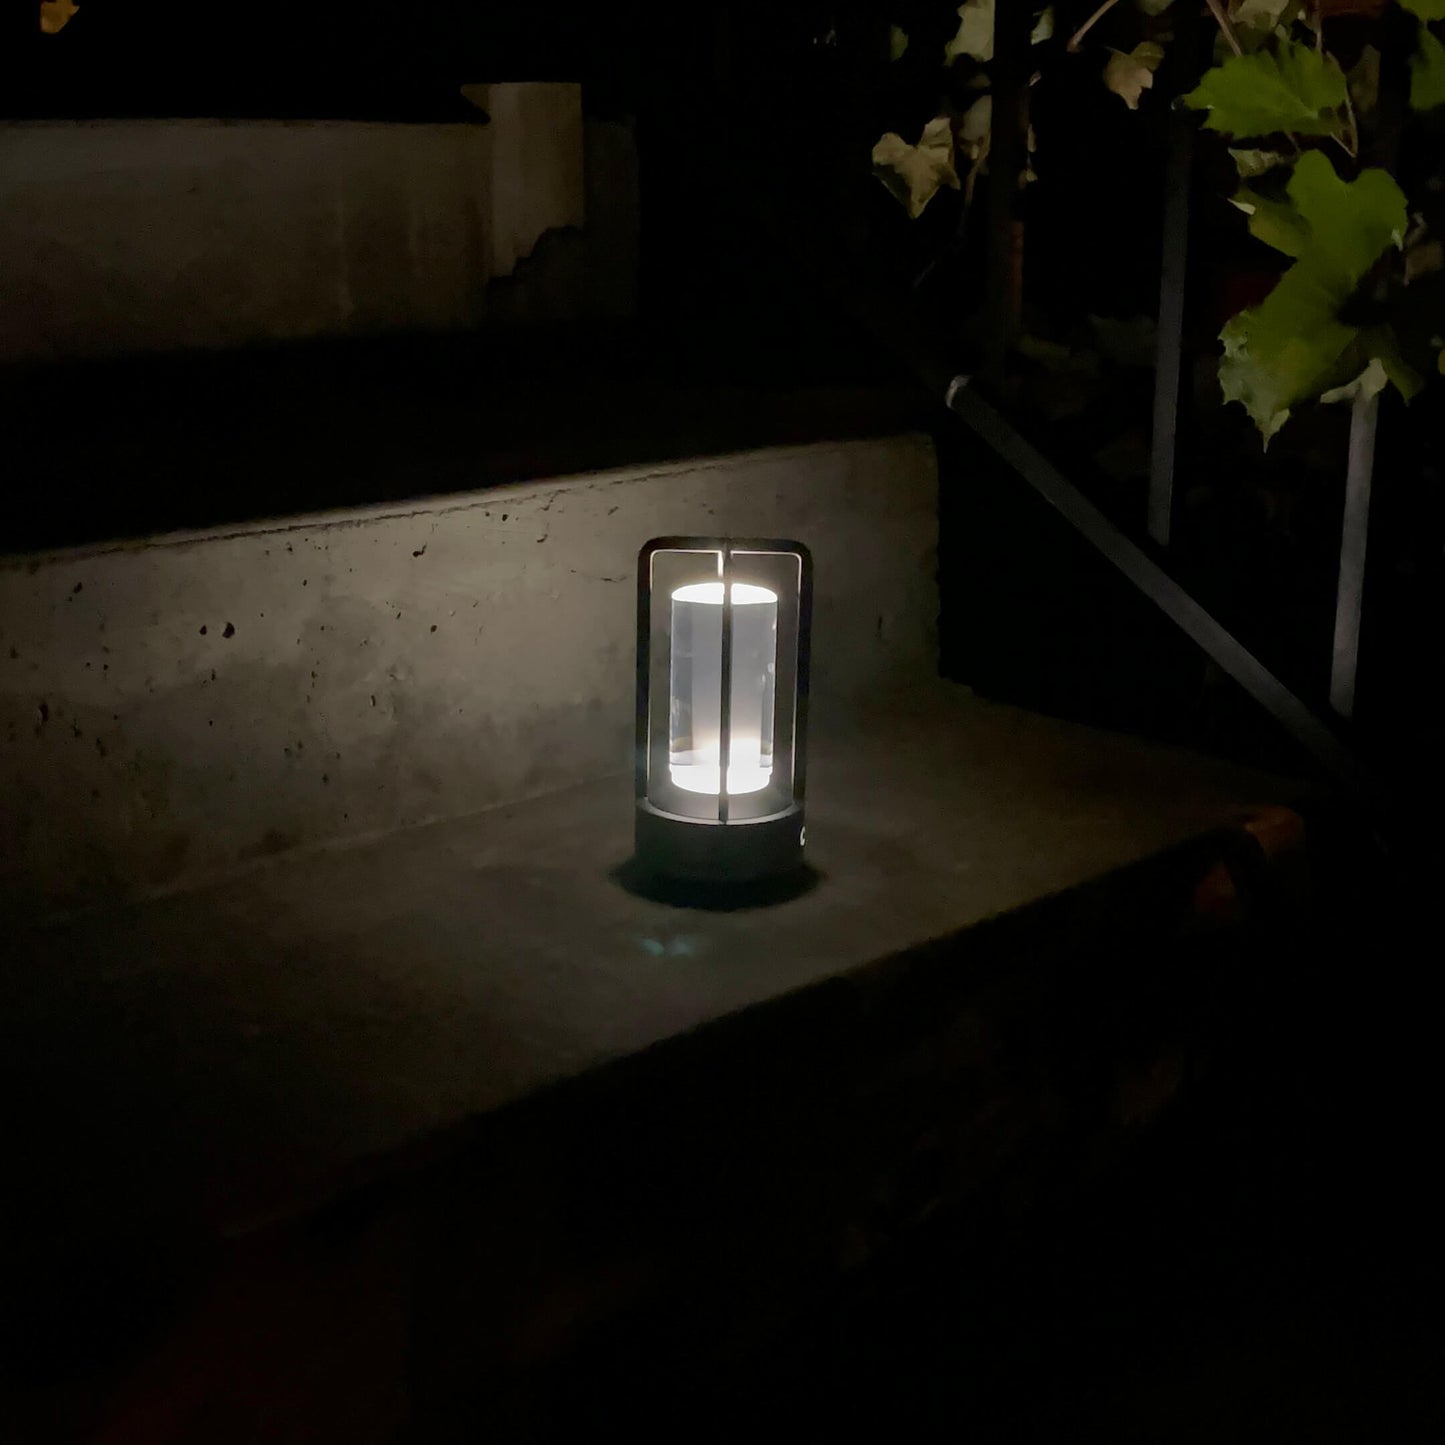 luminária de mesa - luminaria cristal - tdt iluminação